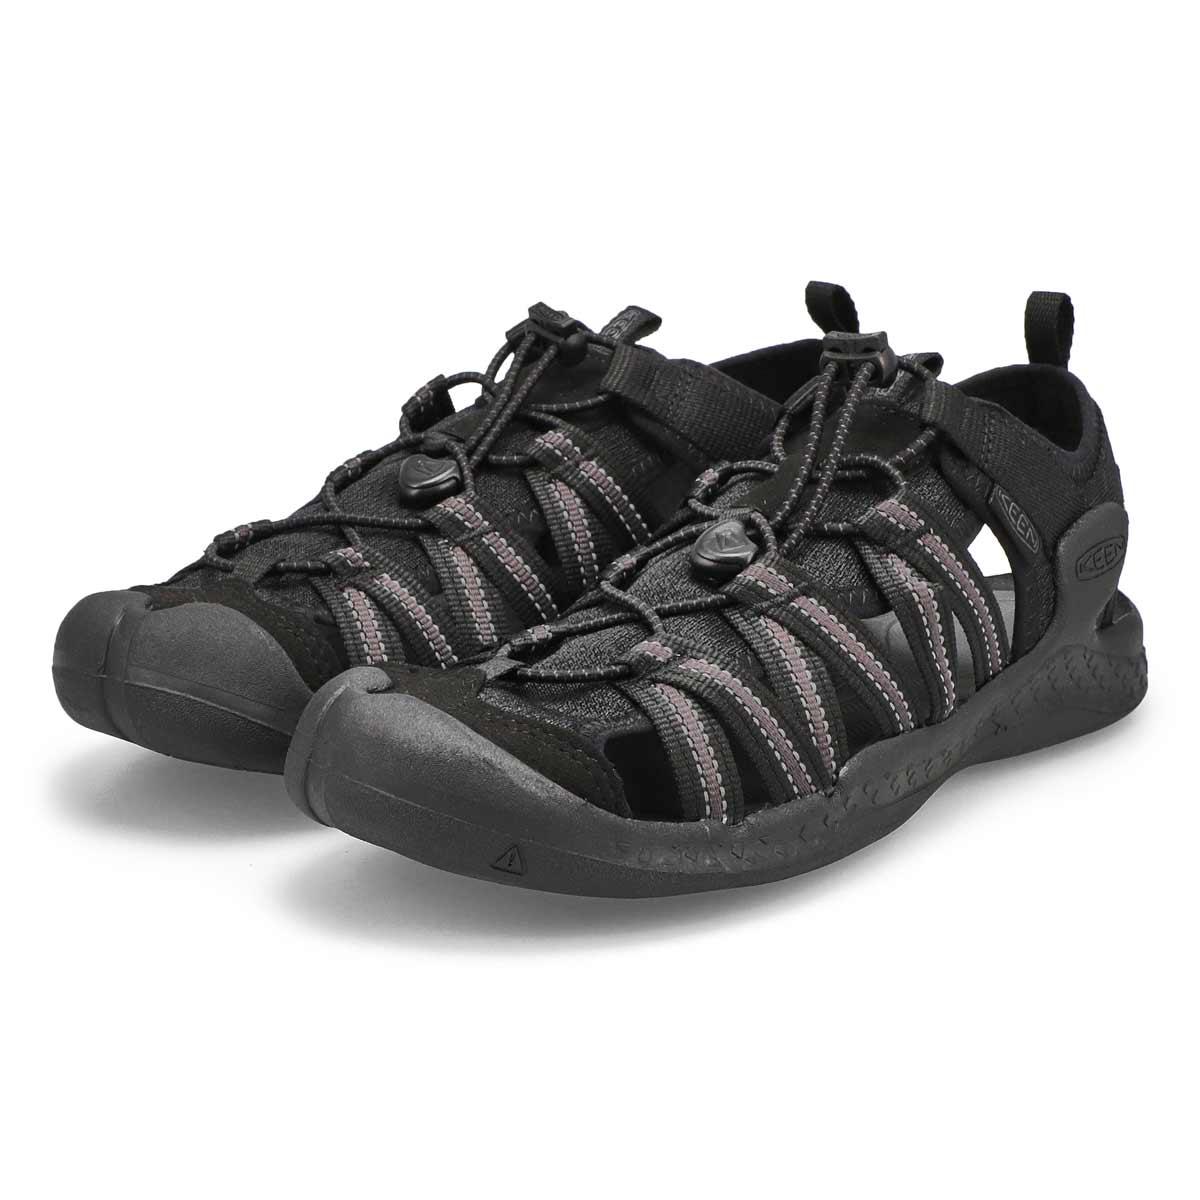 Sandale sport DRIFT CREEK H2, noir/noir, hommes